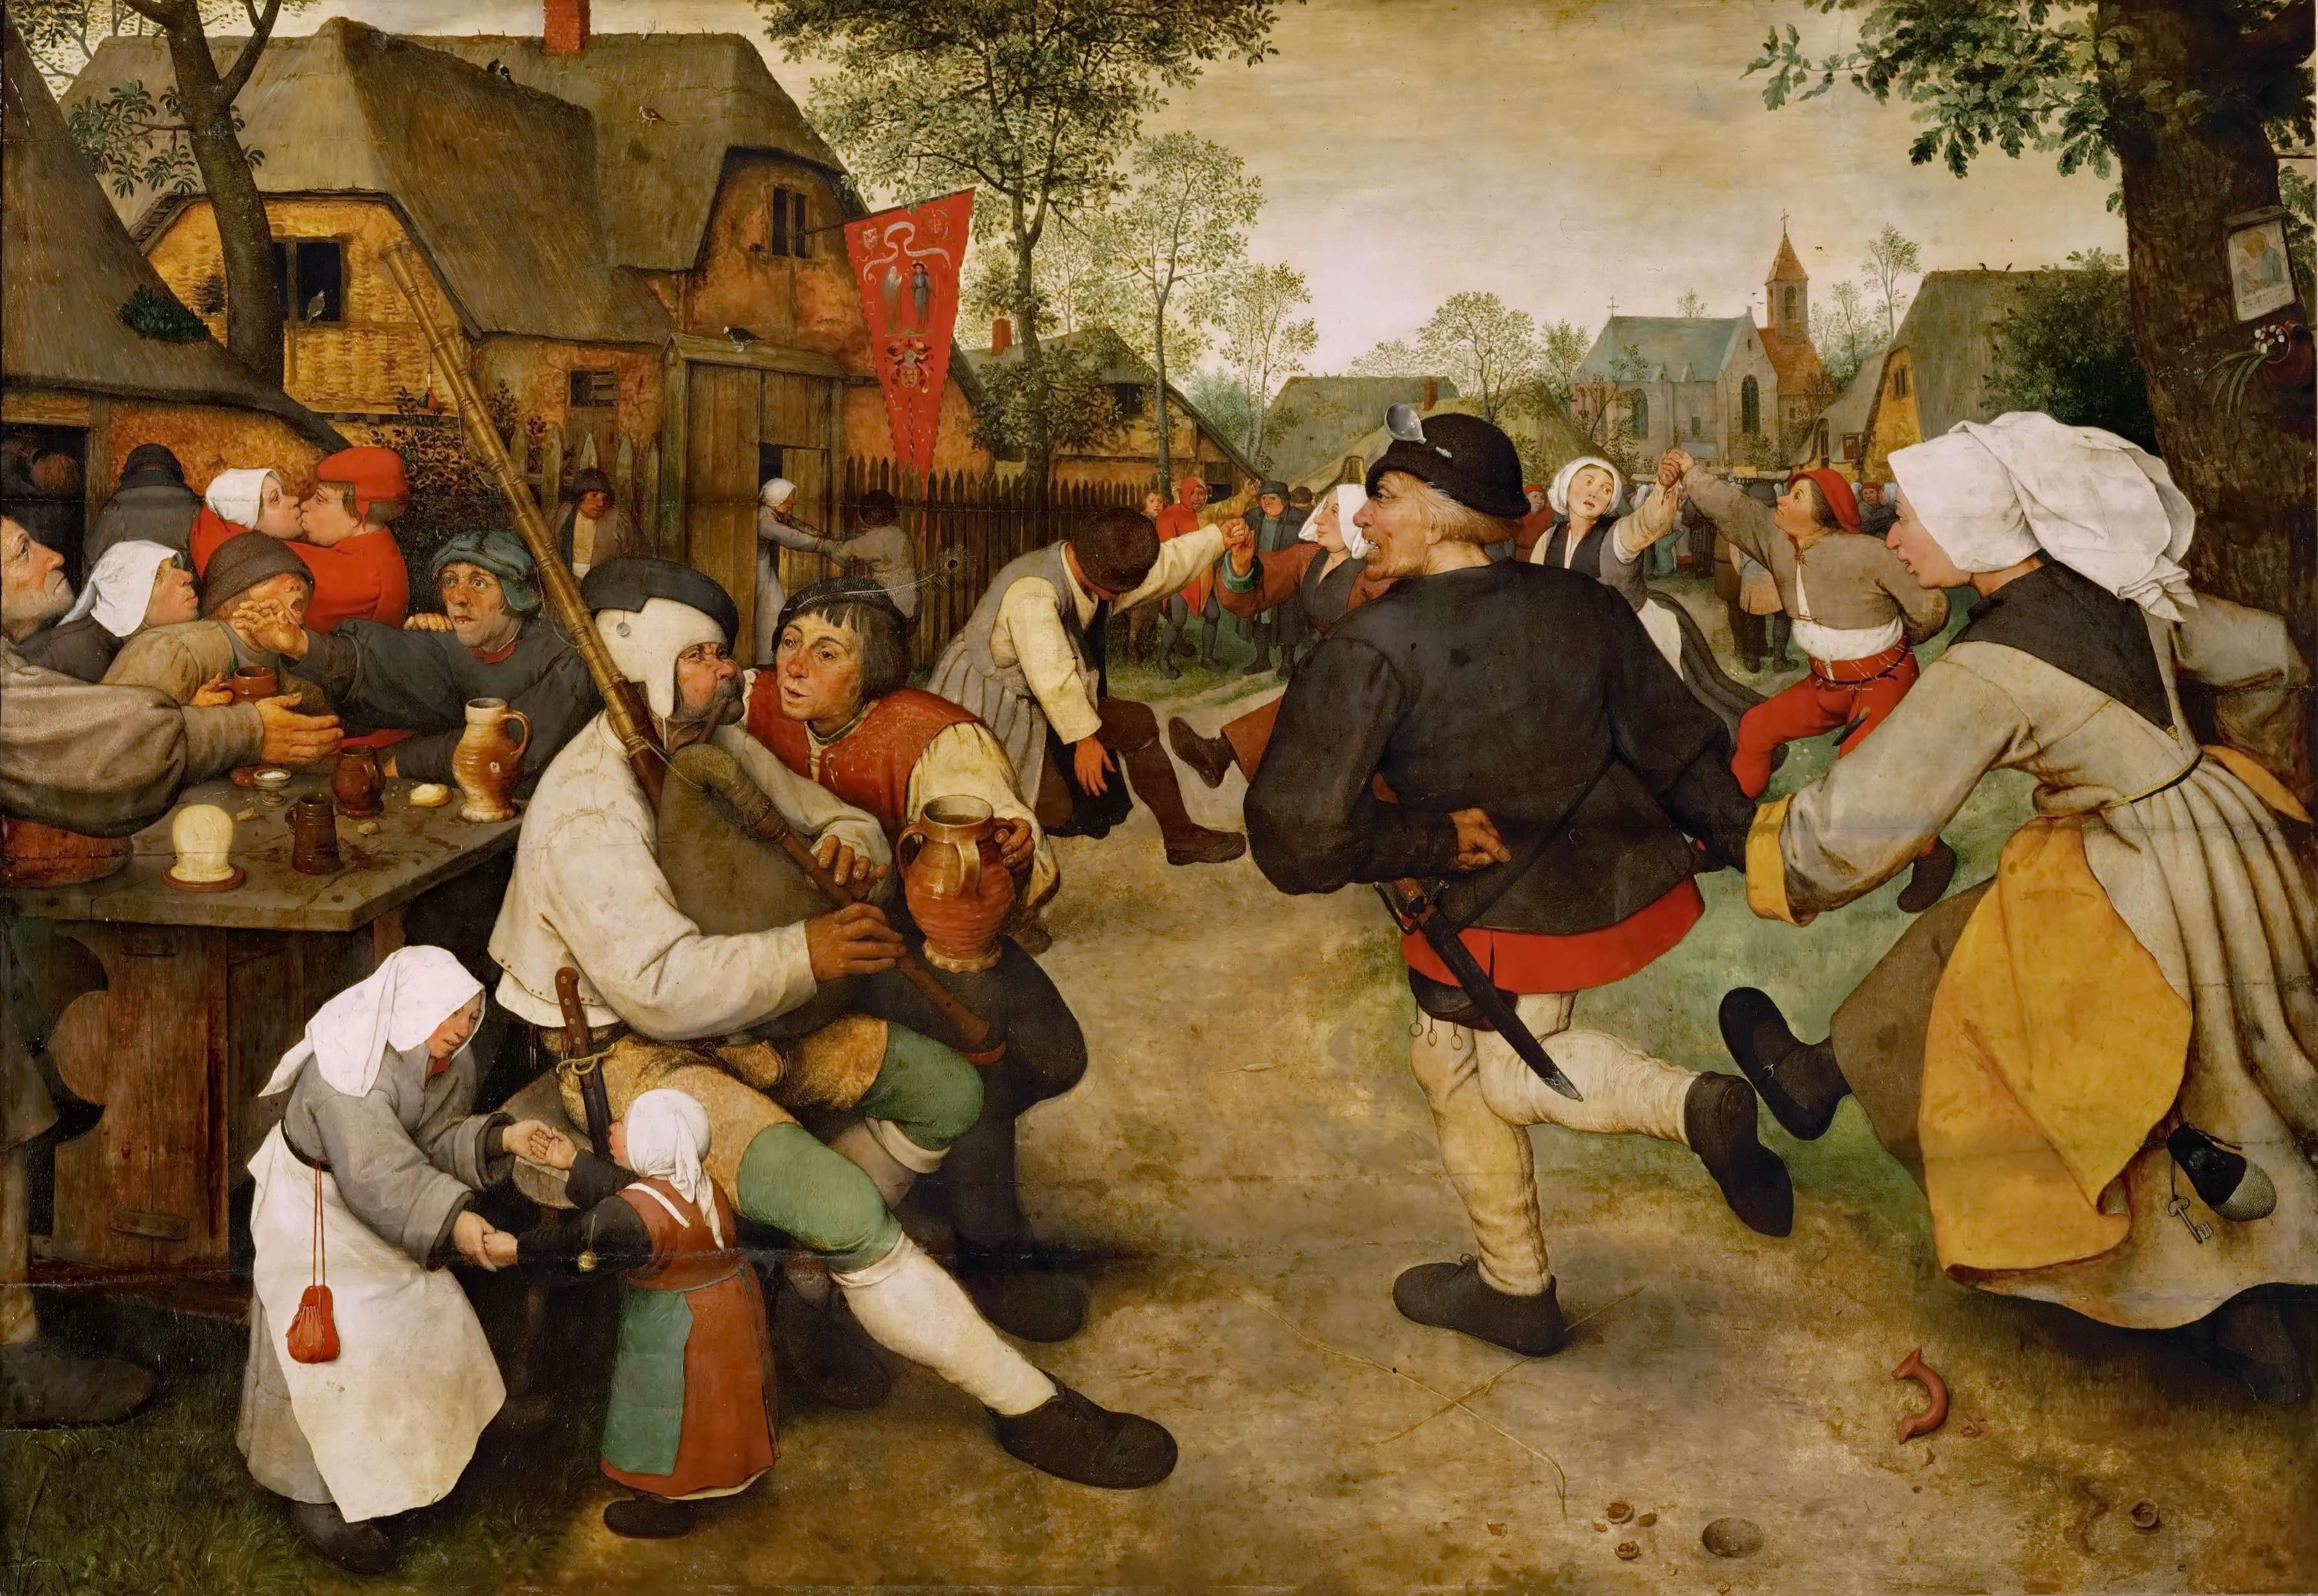 Πίτερ Μπρίγκελ ή Μπρέγκελ ο πρεσβύτερος. The Peasant Dance (1568), Kunsthistorisches Museum, Vienna, oil on oak panel